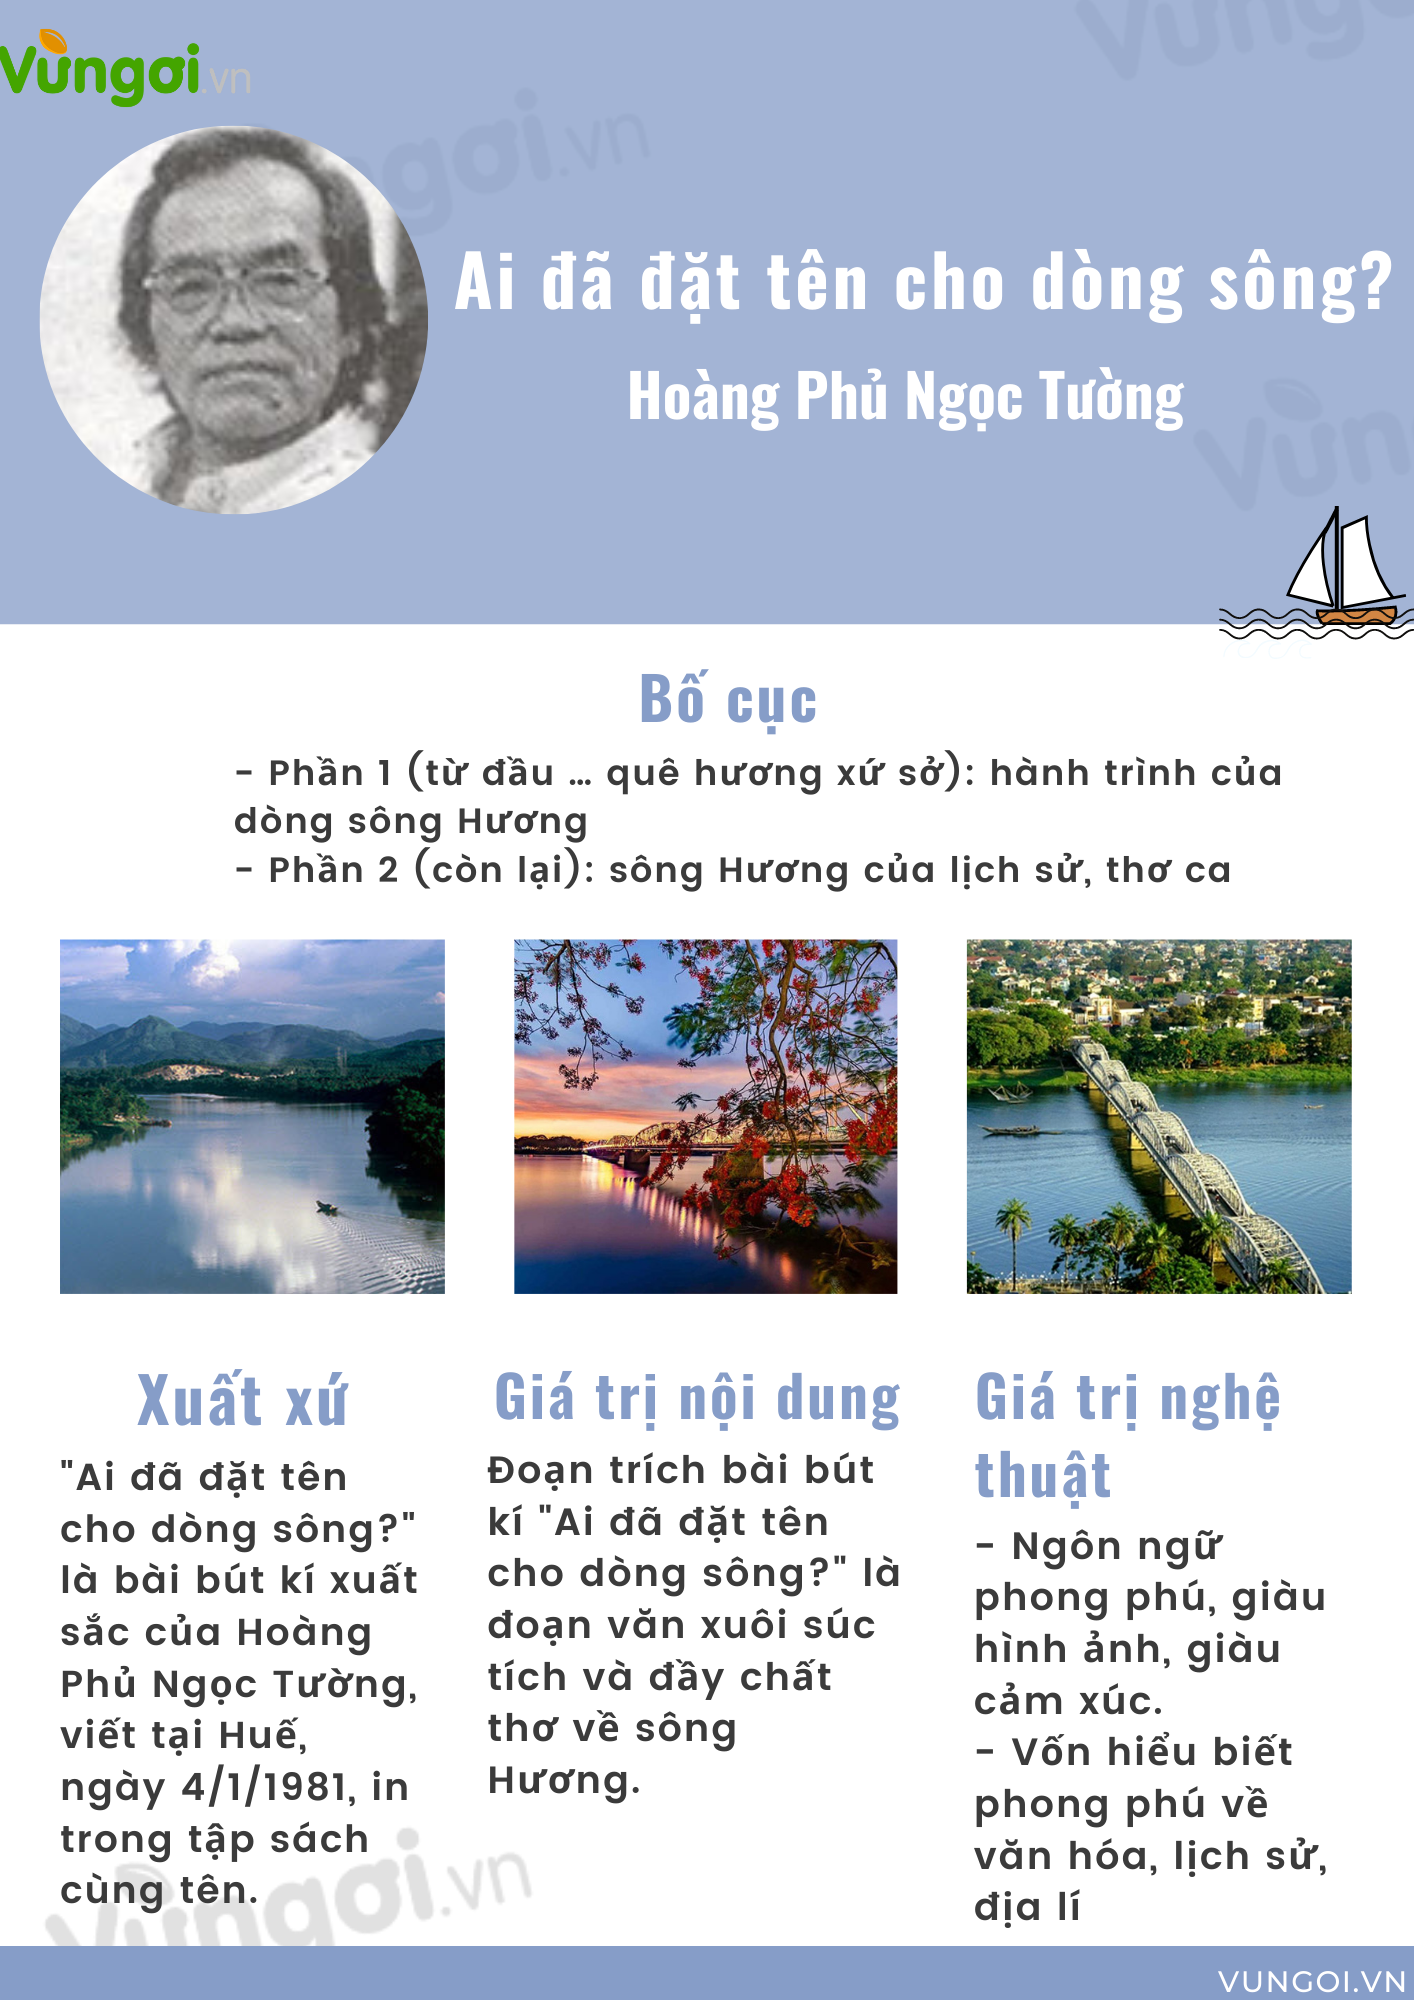 Hoàng phủ Đồng Đăng - một biểu tượng đặc biệt của quá khứ và văn hóa Việt Nam. Cùng khám phá kiến trúc tuyệt đẹp của hoàng phủ này và khám phá lịch sử đầy màu sắc của đất nước.